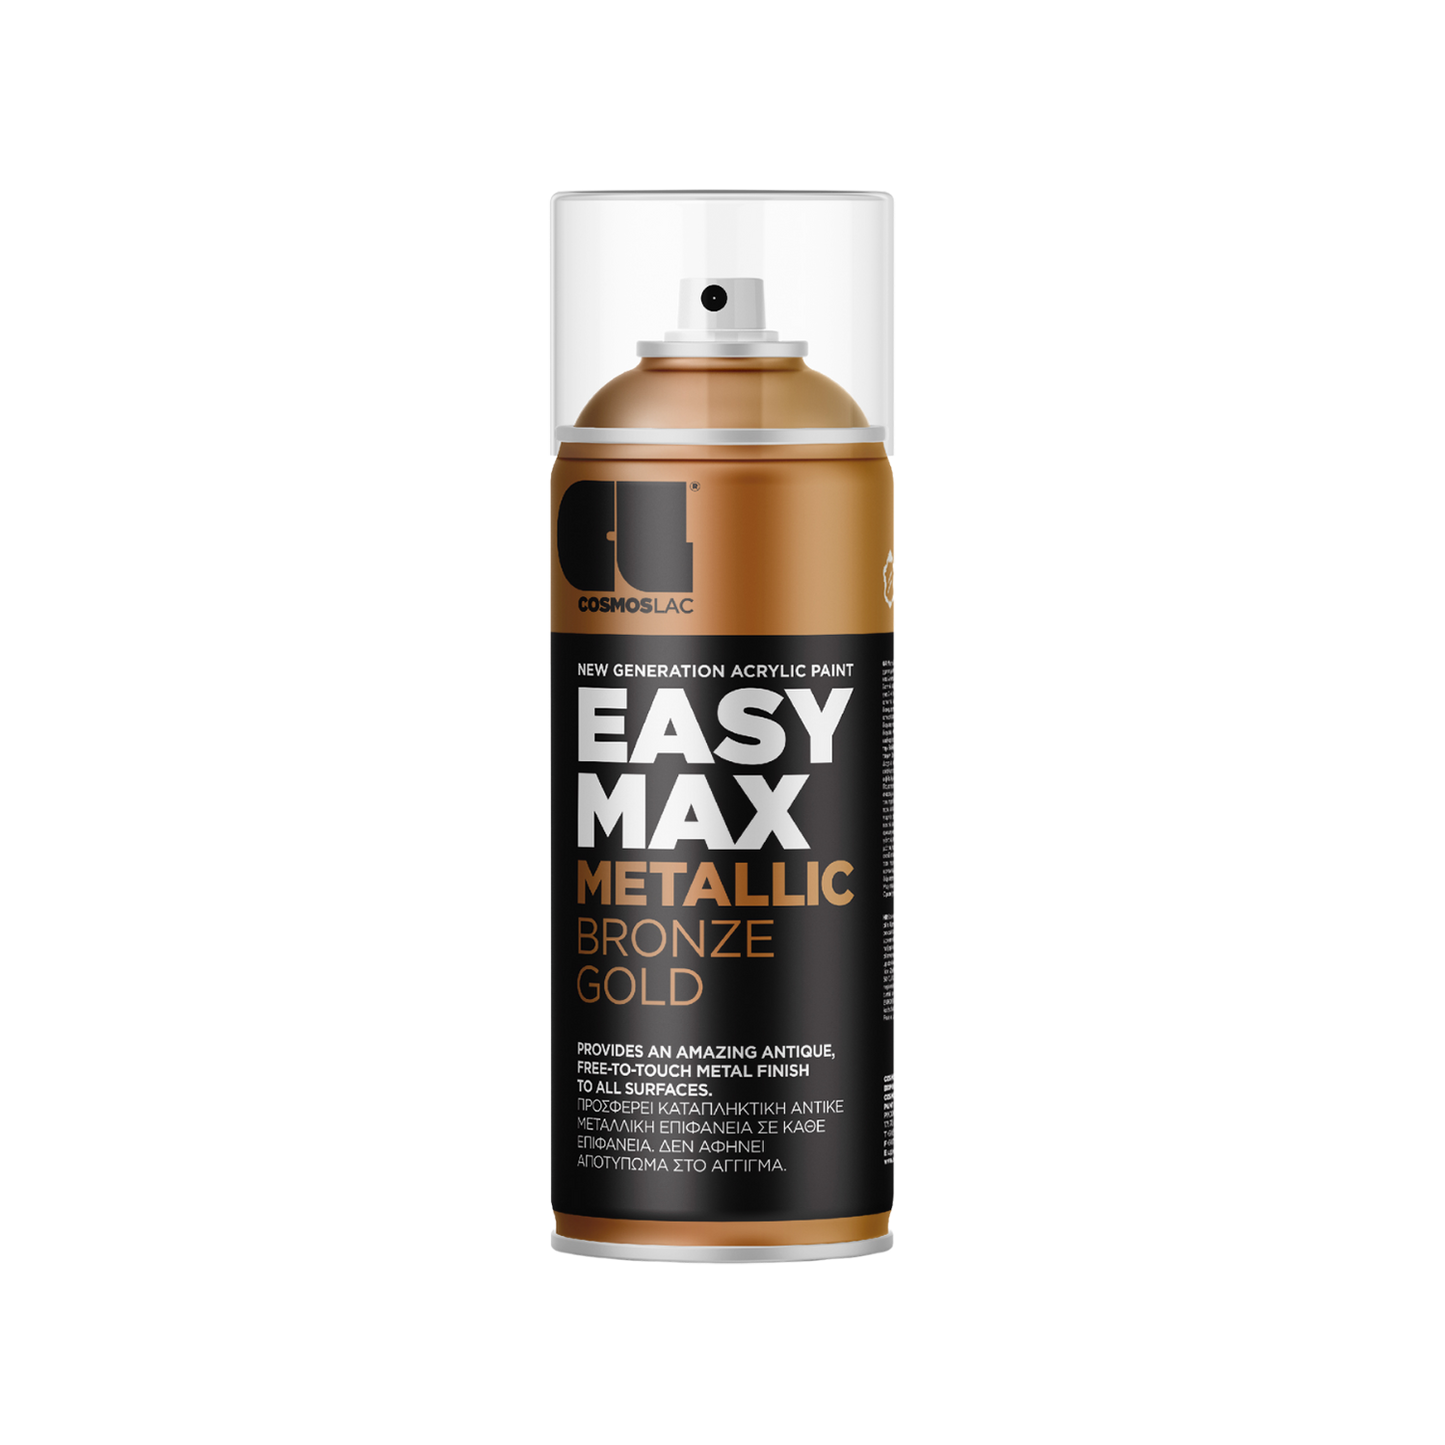 COSMOS LAC EASY MAX Premium Acryllack Sprühlack zum Upcycling und DIY Projekten von Möbeln und Dekoobjekten Schwarze Sprühflasche mit Bronze Metallic